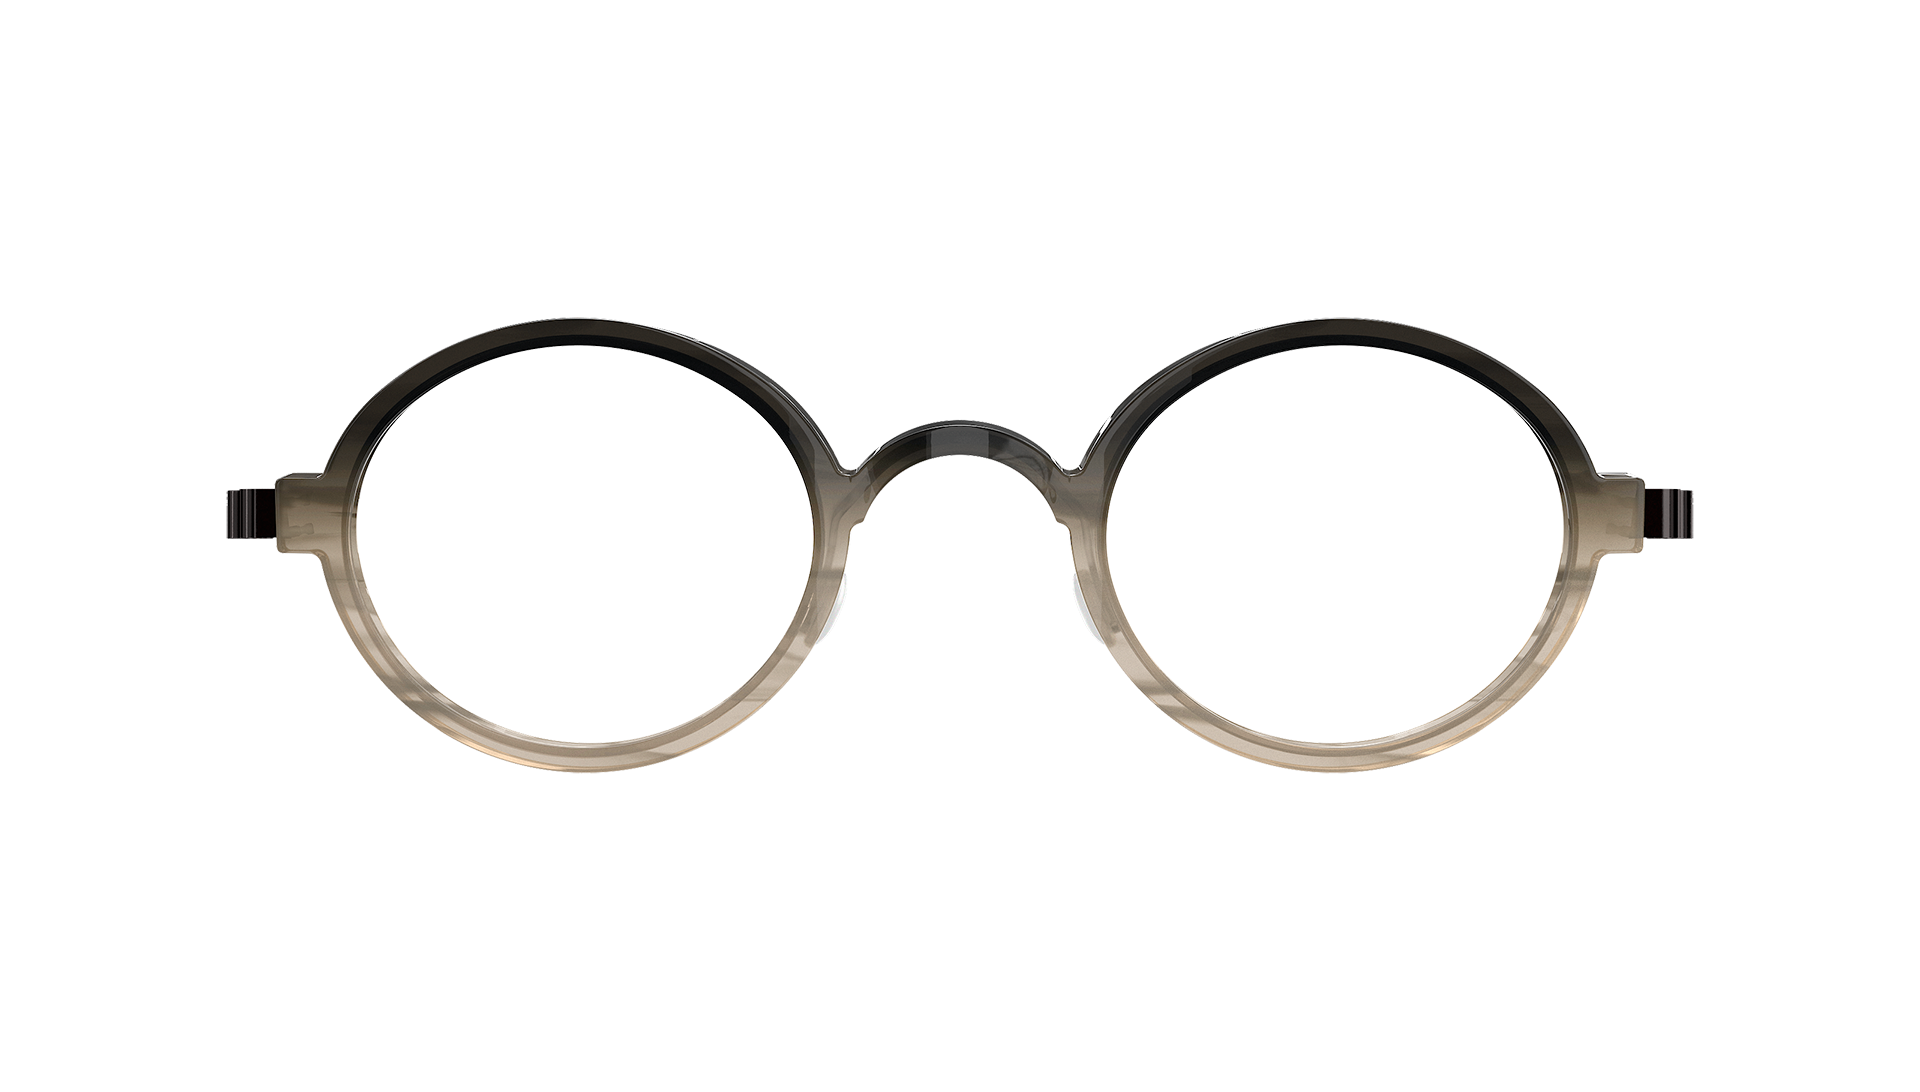 LINDBERG acetanium acetate and titanium round glasses Model 1011 in a gray gradient colour